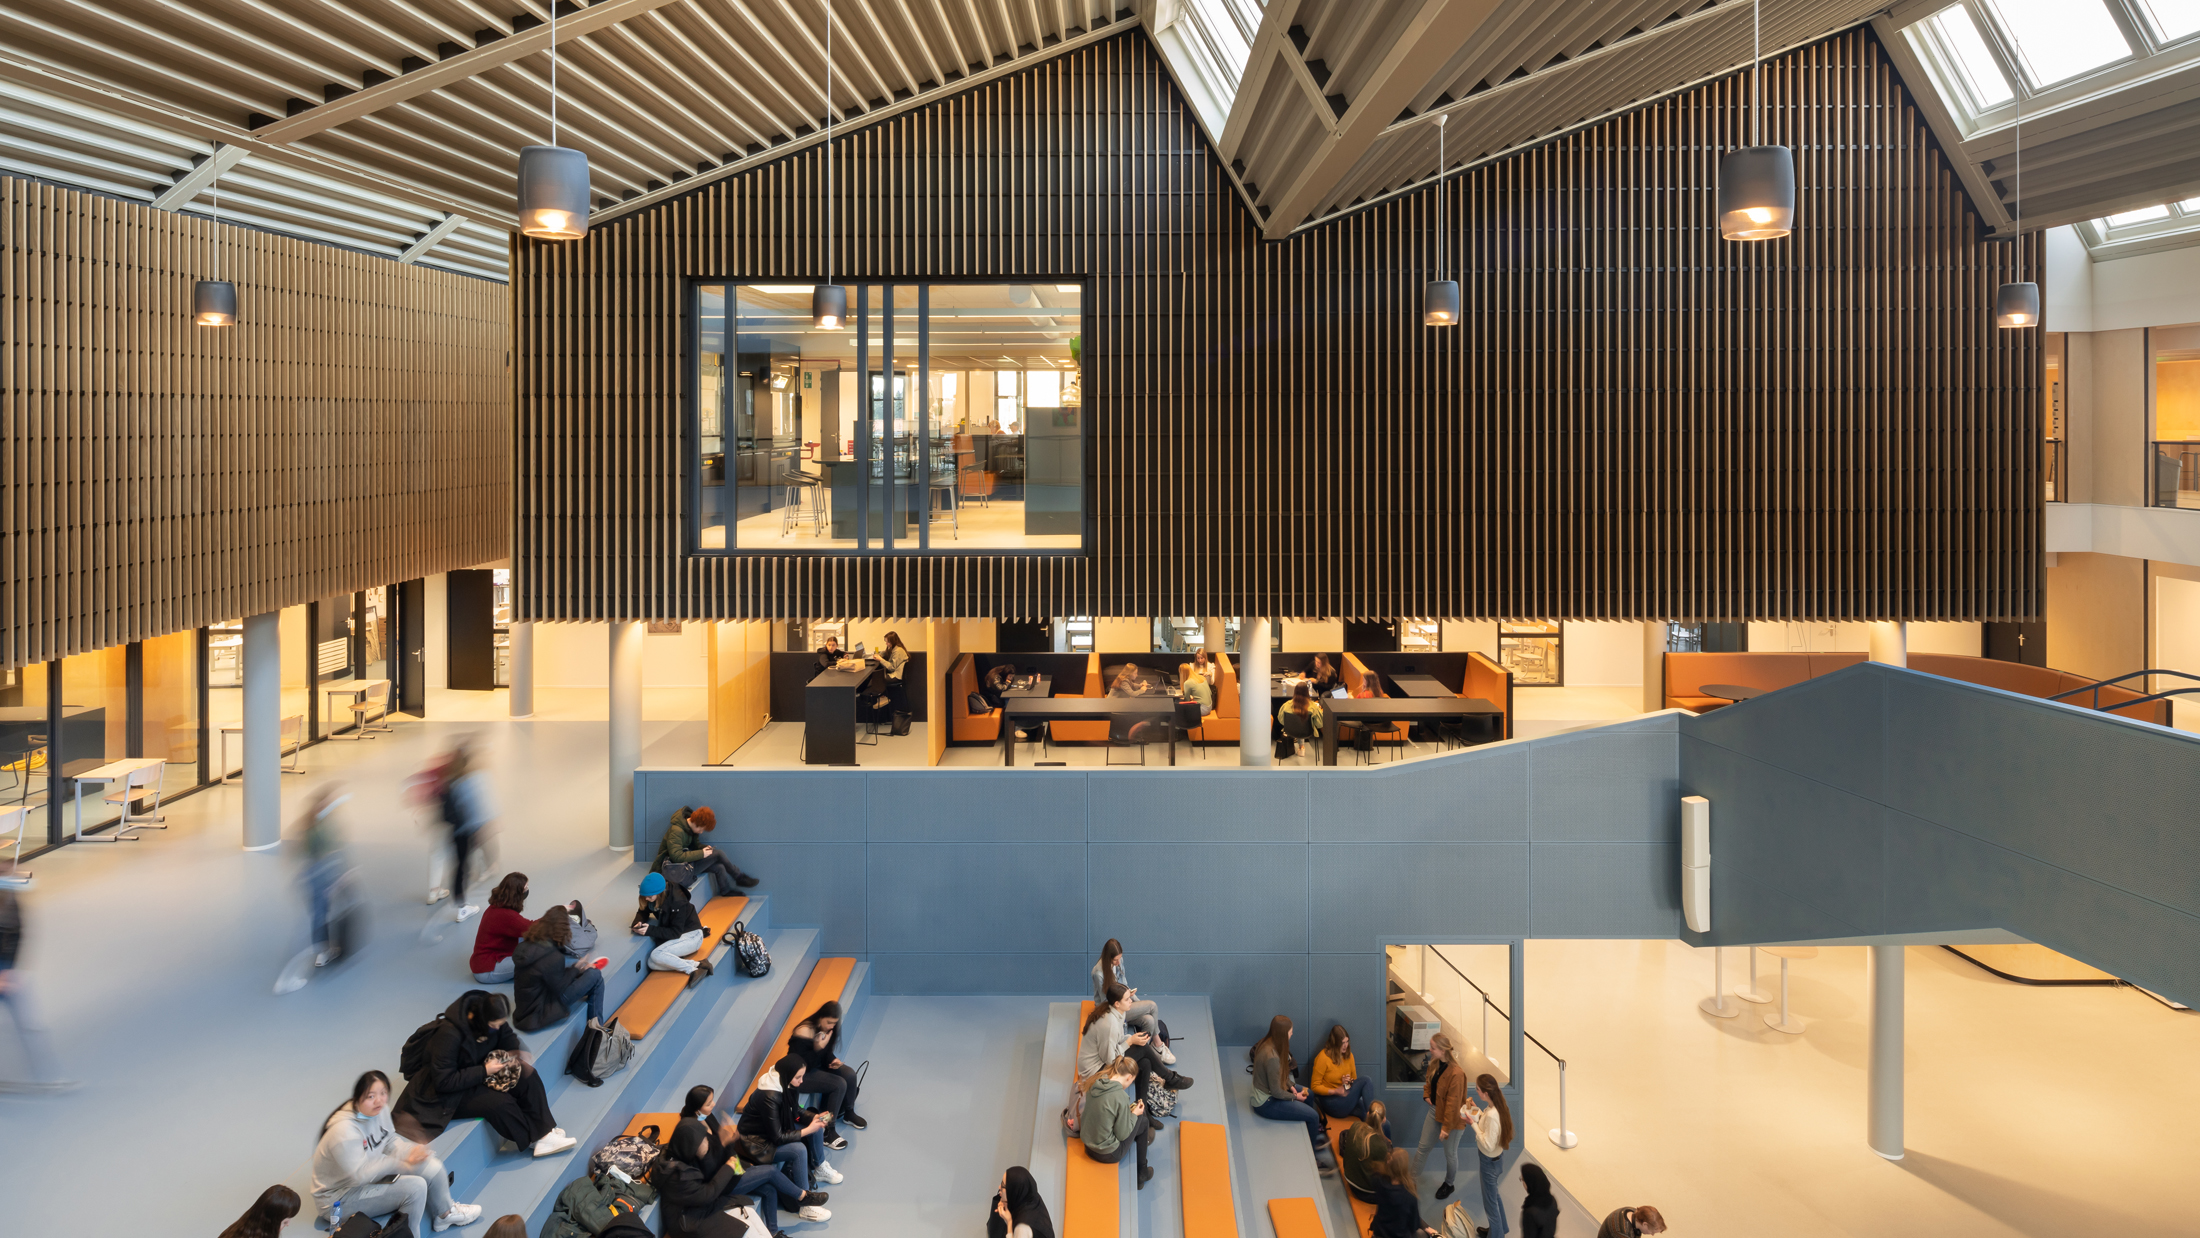 Christelijk Lyceum Veenendaal, designed by NOAHH | Network Oriented Architecture